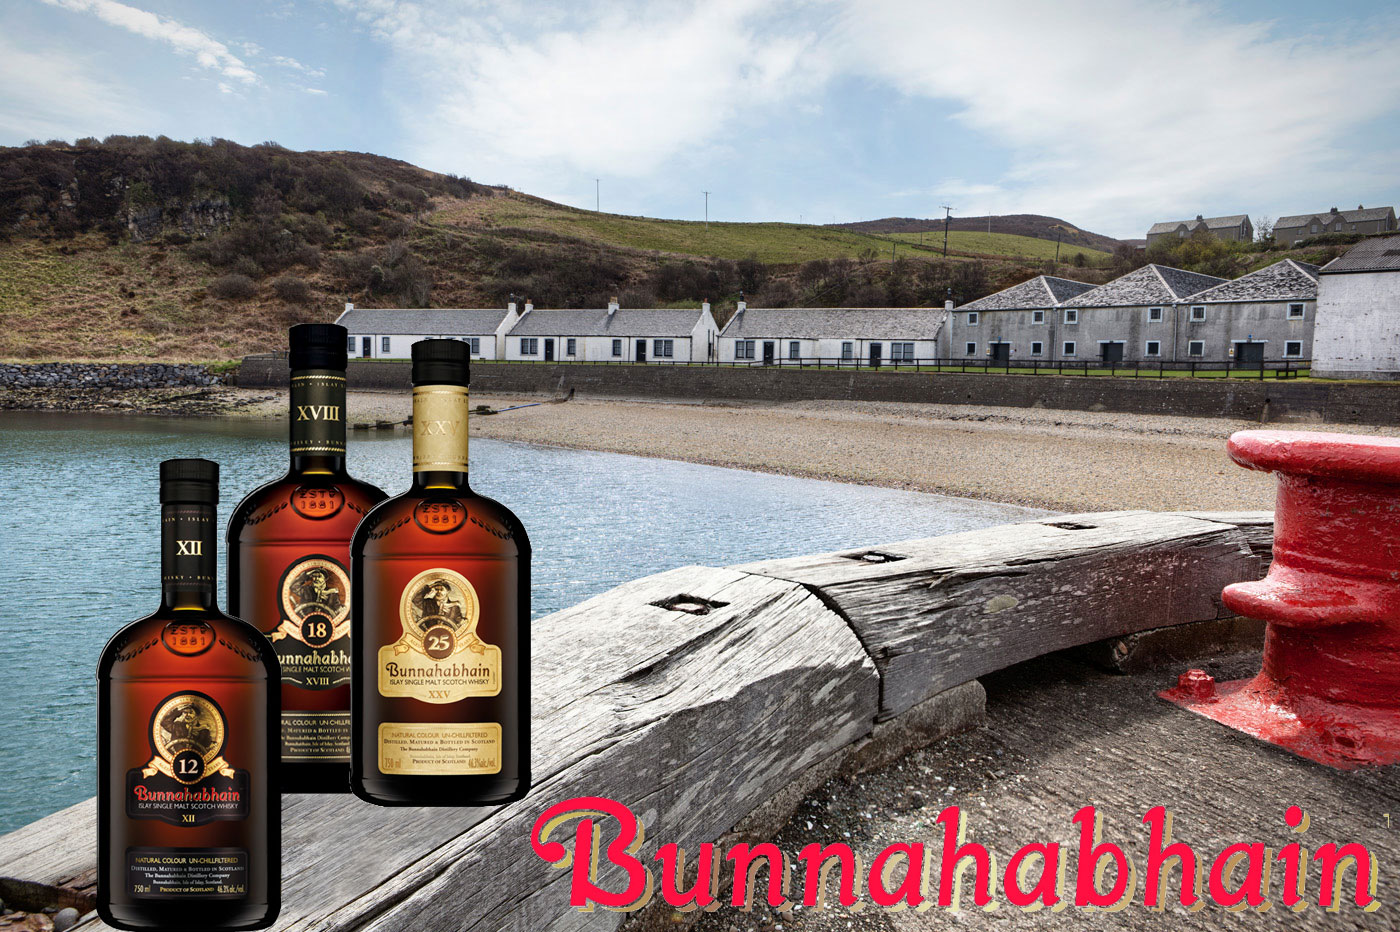 Bunnahabhain Islay Malt Whisky